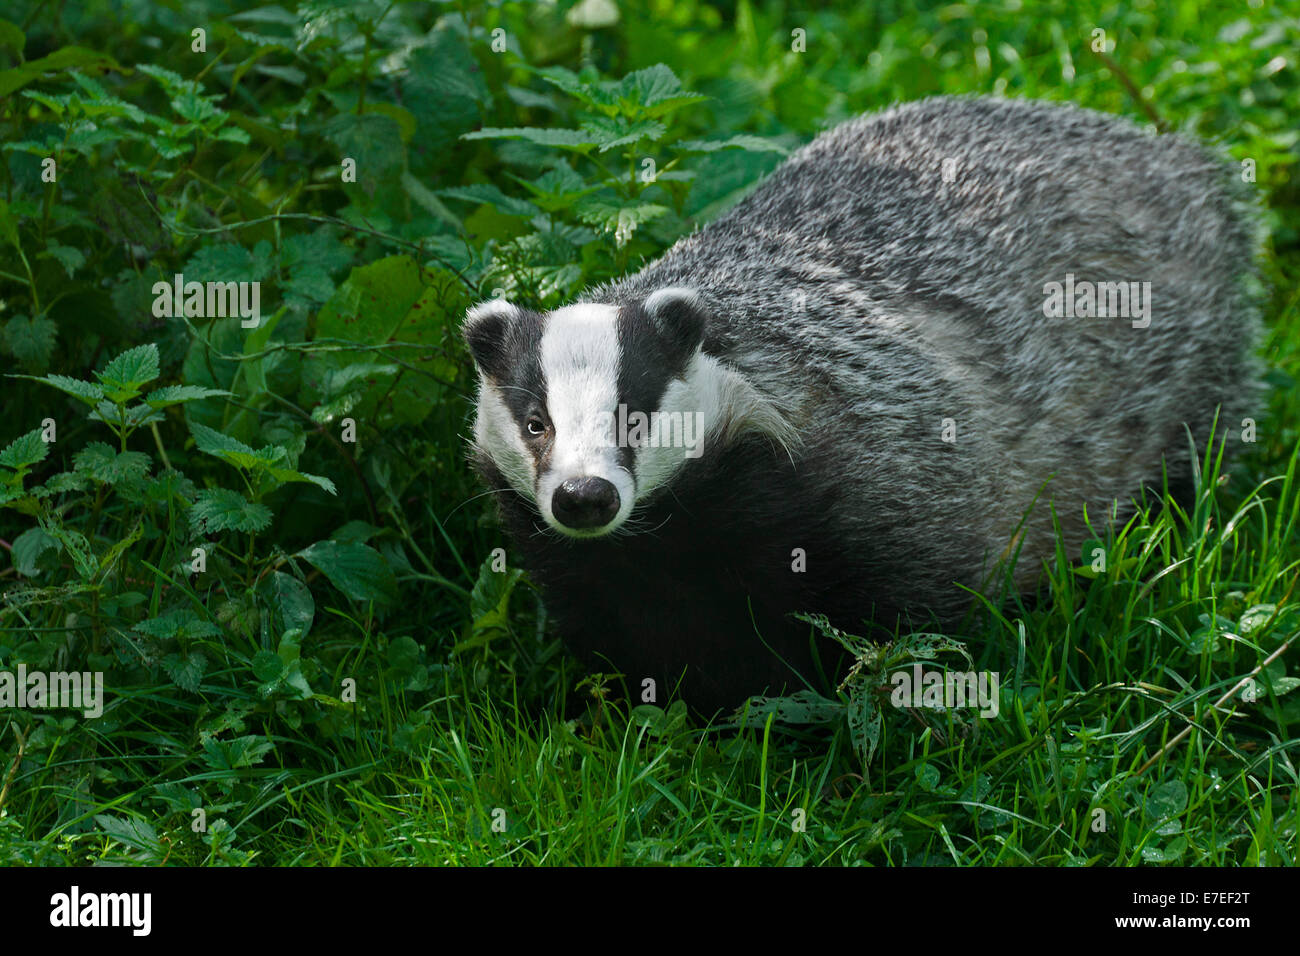 European badger (Meles meles) foraging in forest's edge Stock Photo